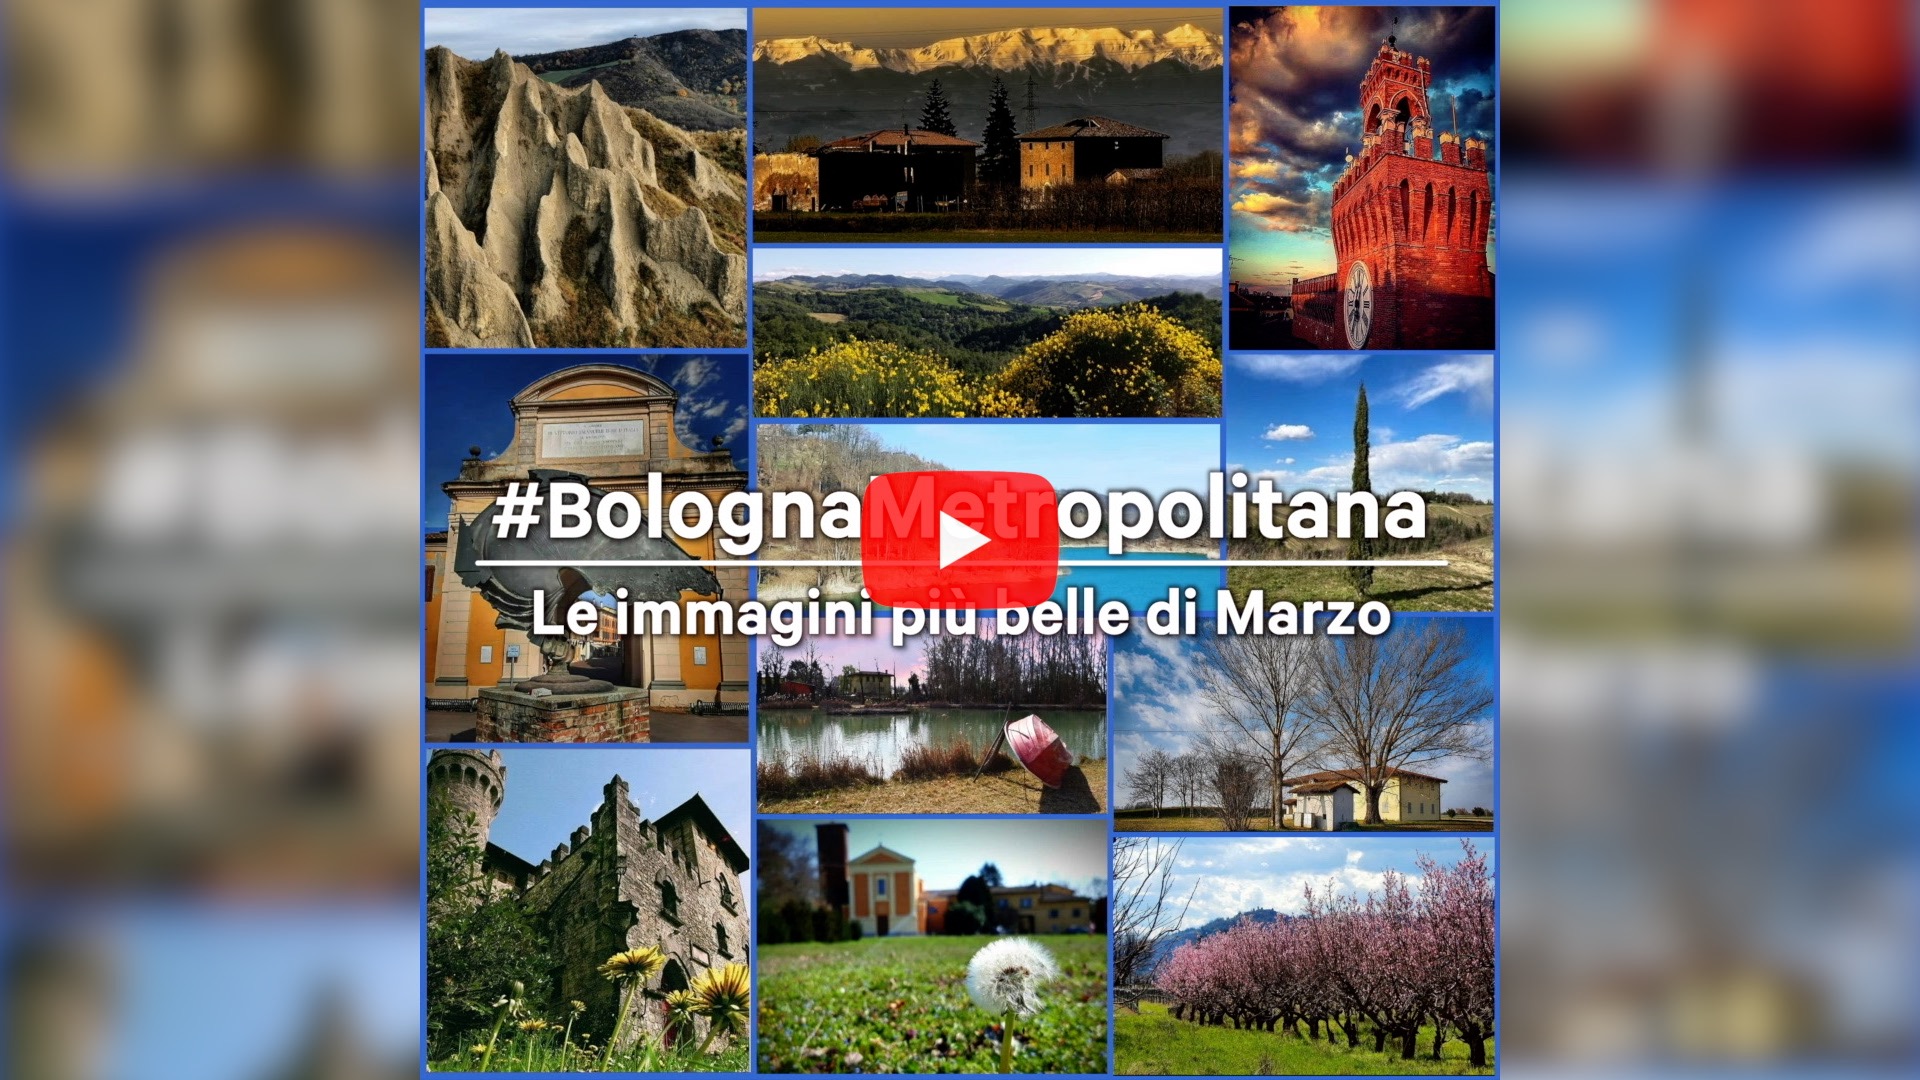 #BolognaMetropolitana - Le immagini più belle di marzo 2021